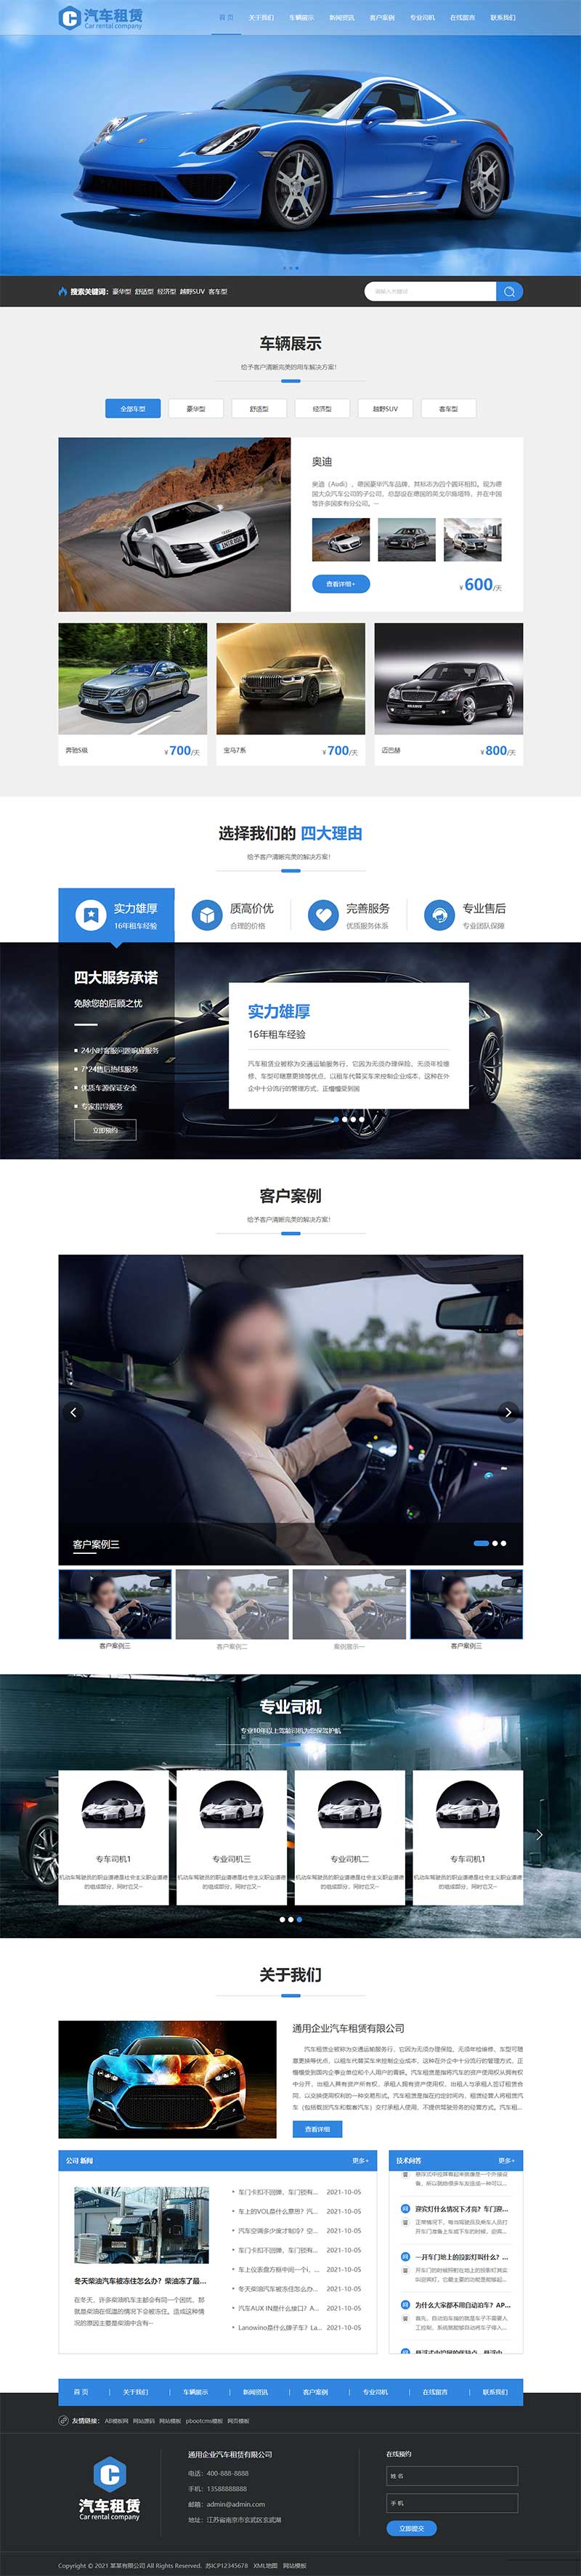 (自适应移动端)html5响应式汽车租赁服务公司网站电脑端模板展示图片